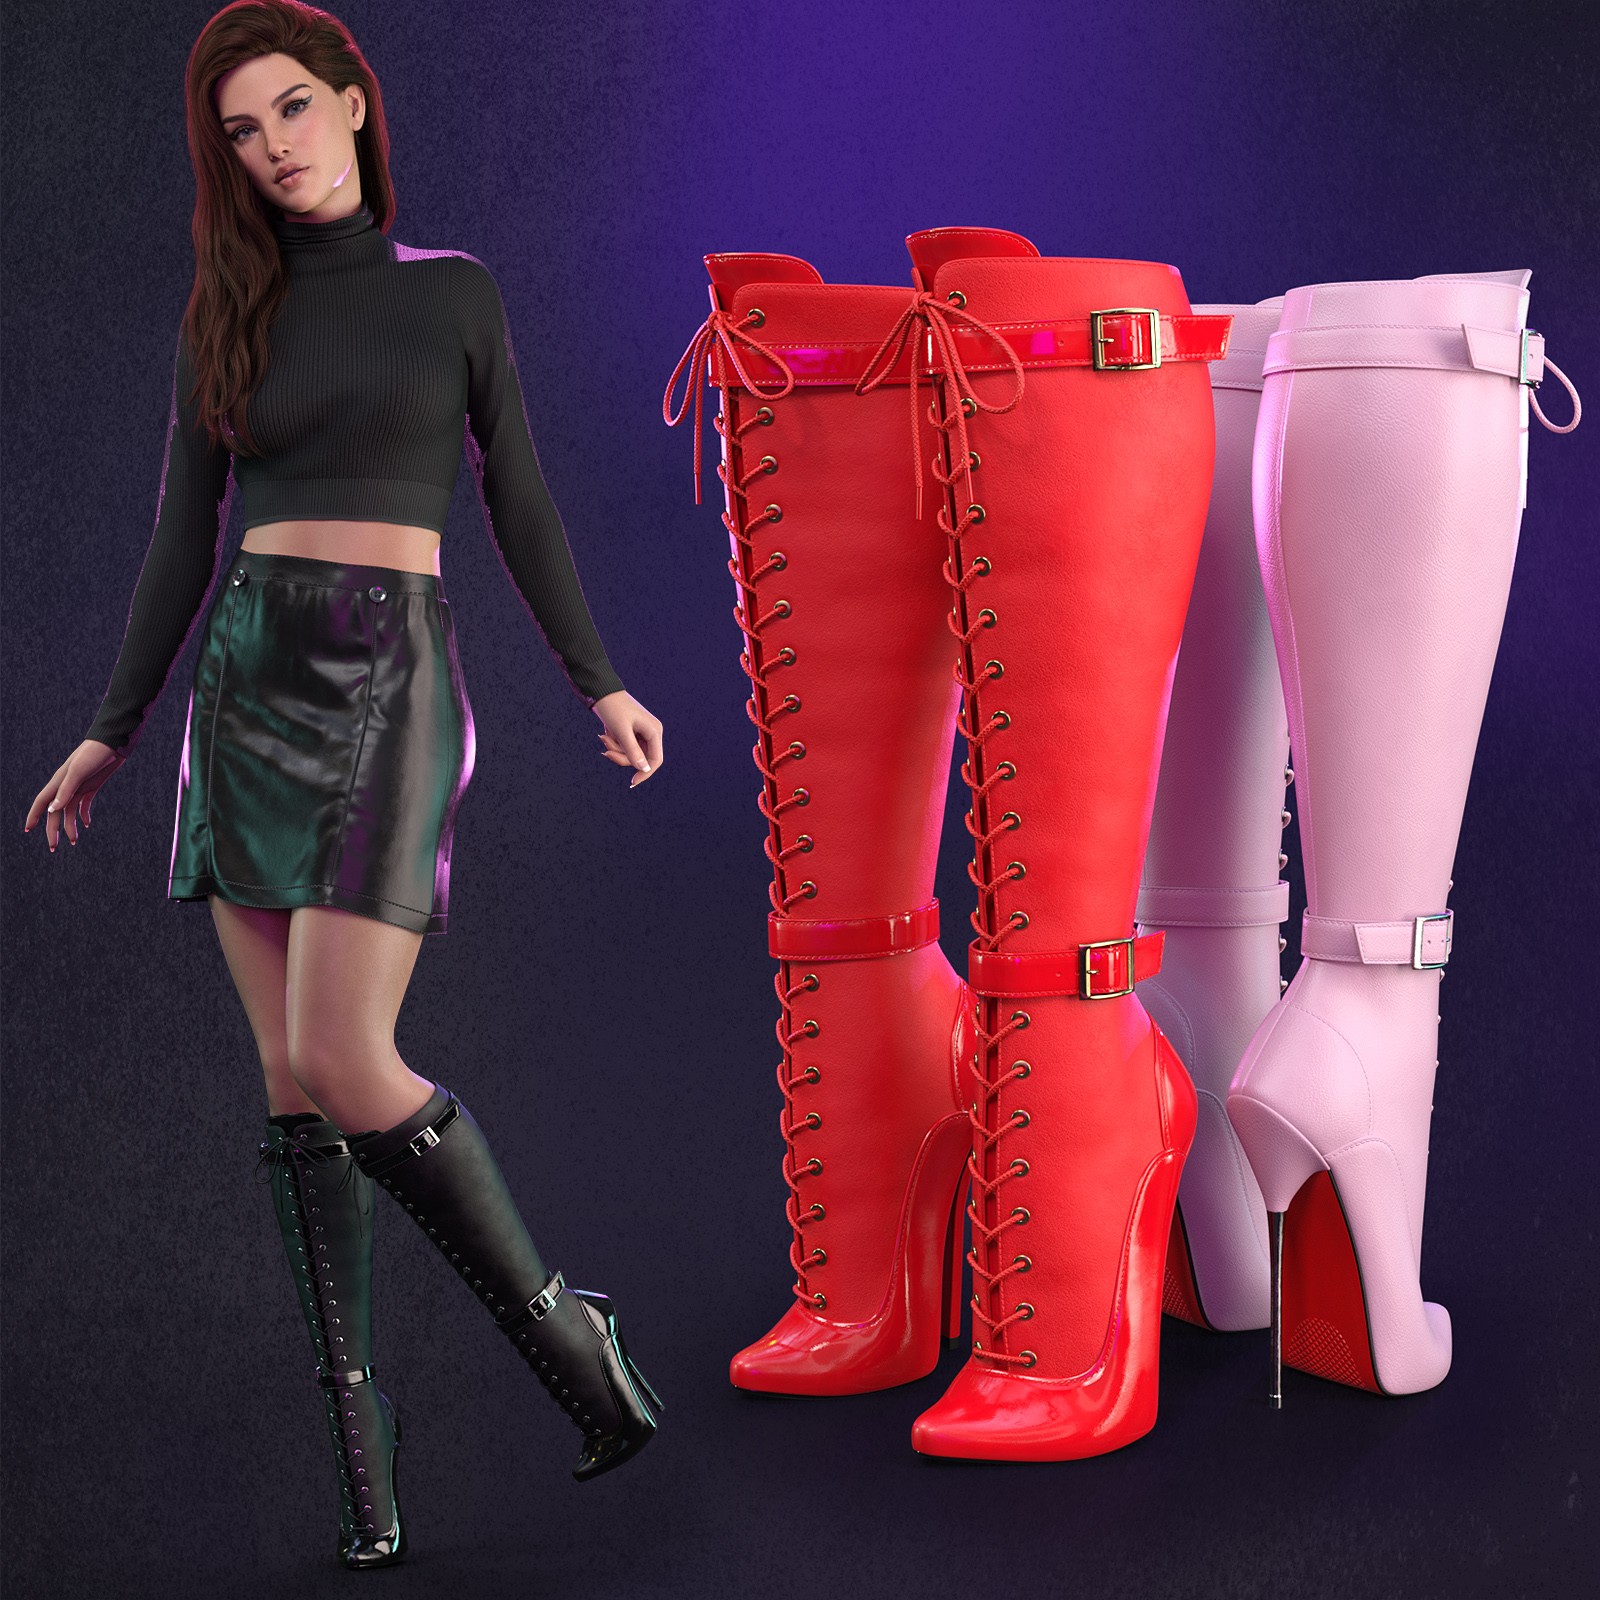 Lace-up Stiletto Ballet Boots by: devianttuna13, 3D Models by Daz 3D